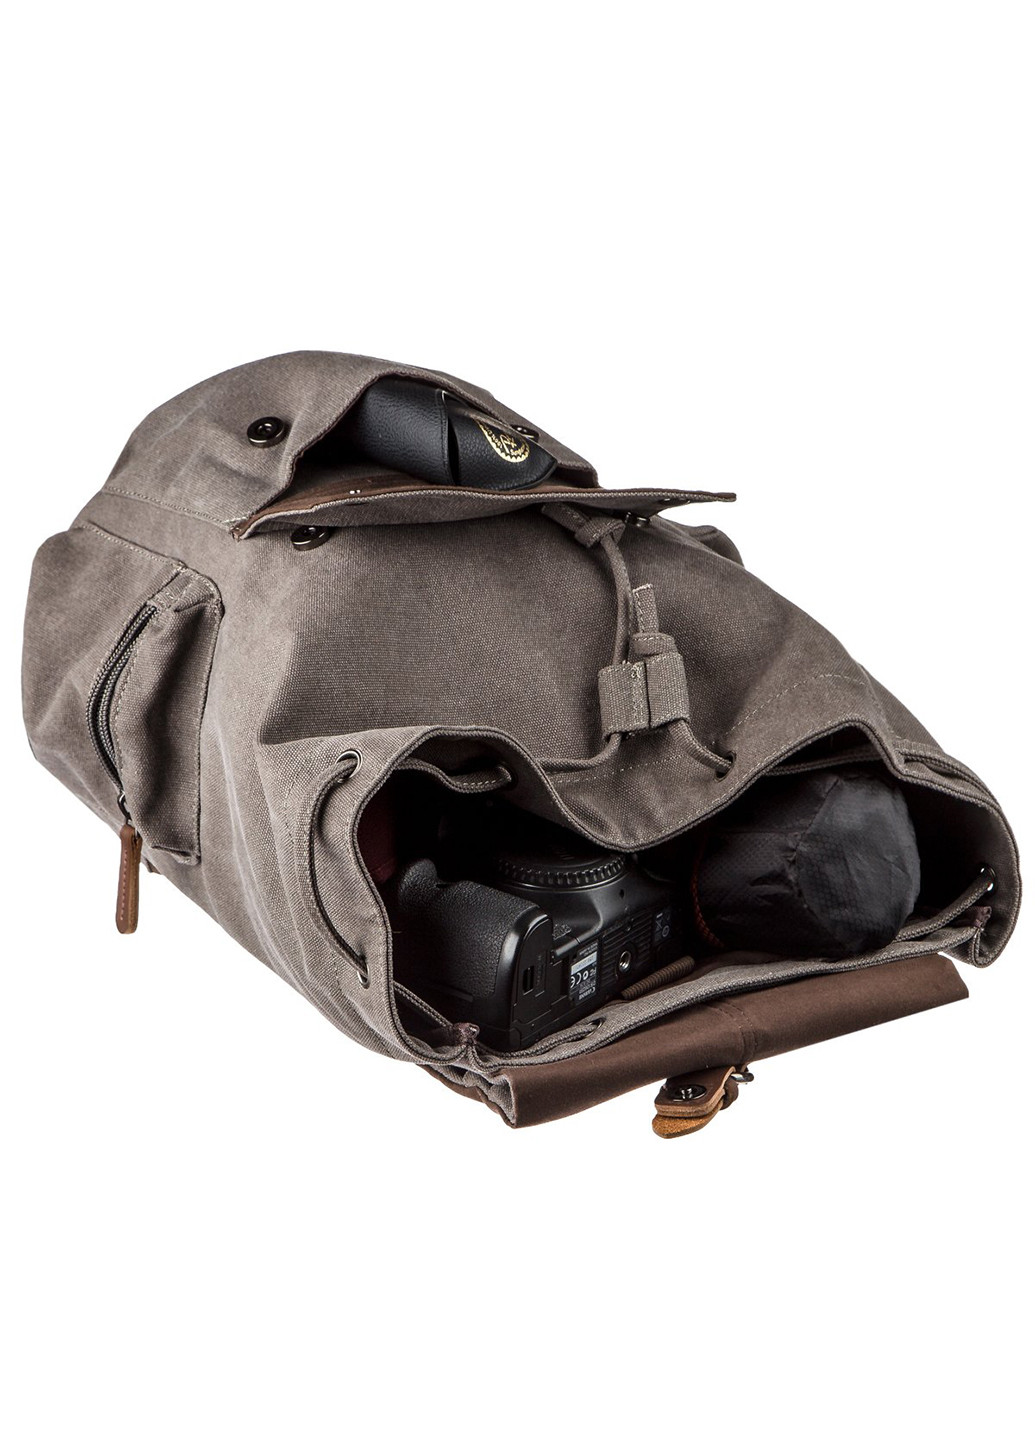 Рюкзак текстильный походный 42х29х19 см Vintage (232990139)